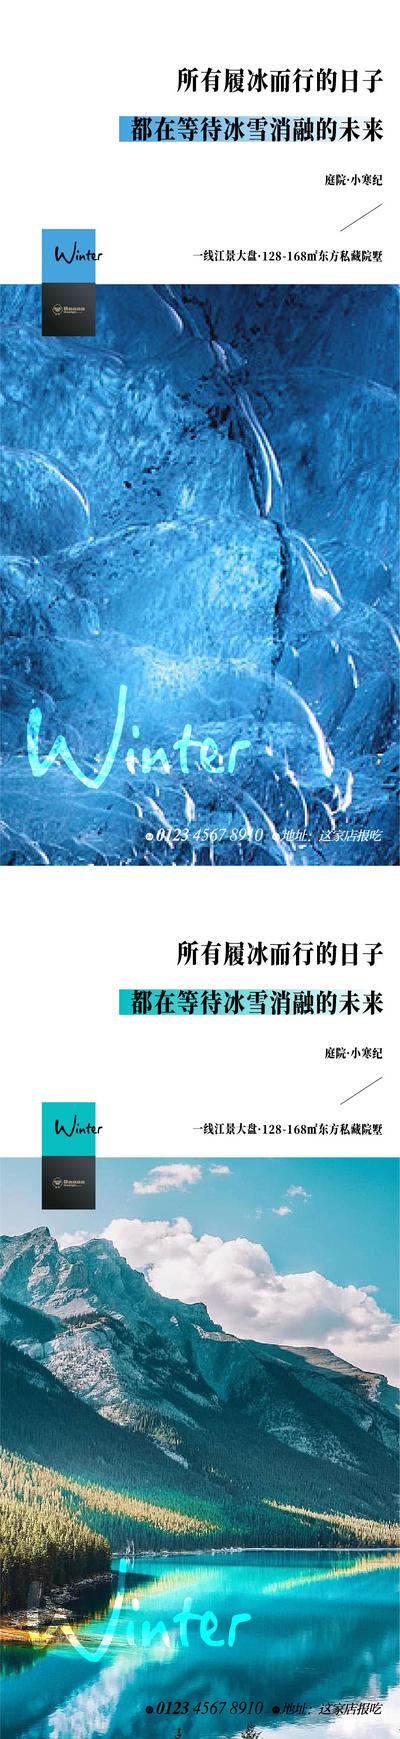 【南门网】节气 系列 小寒 大寒 版式 刷屏 微信 传统节日 参考 冬 雪